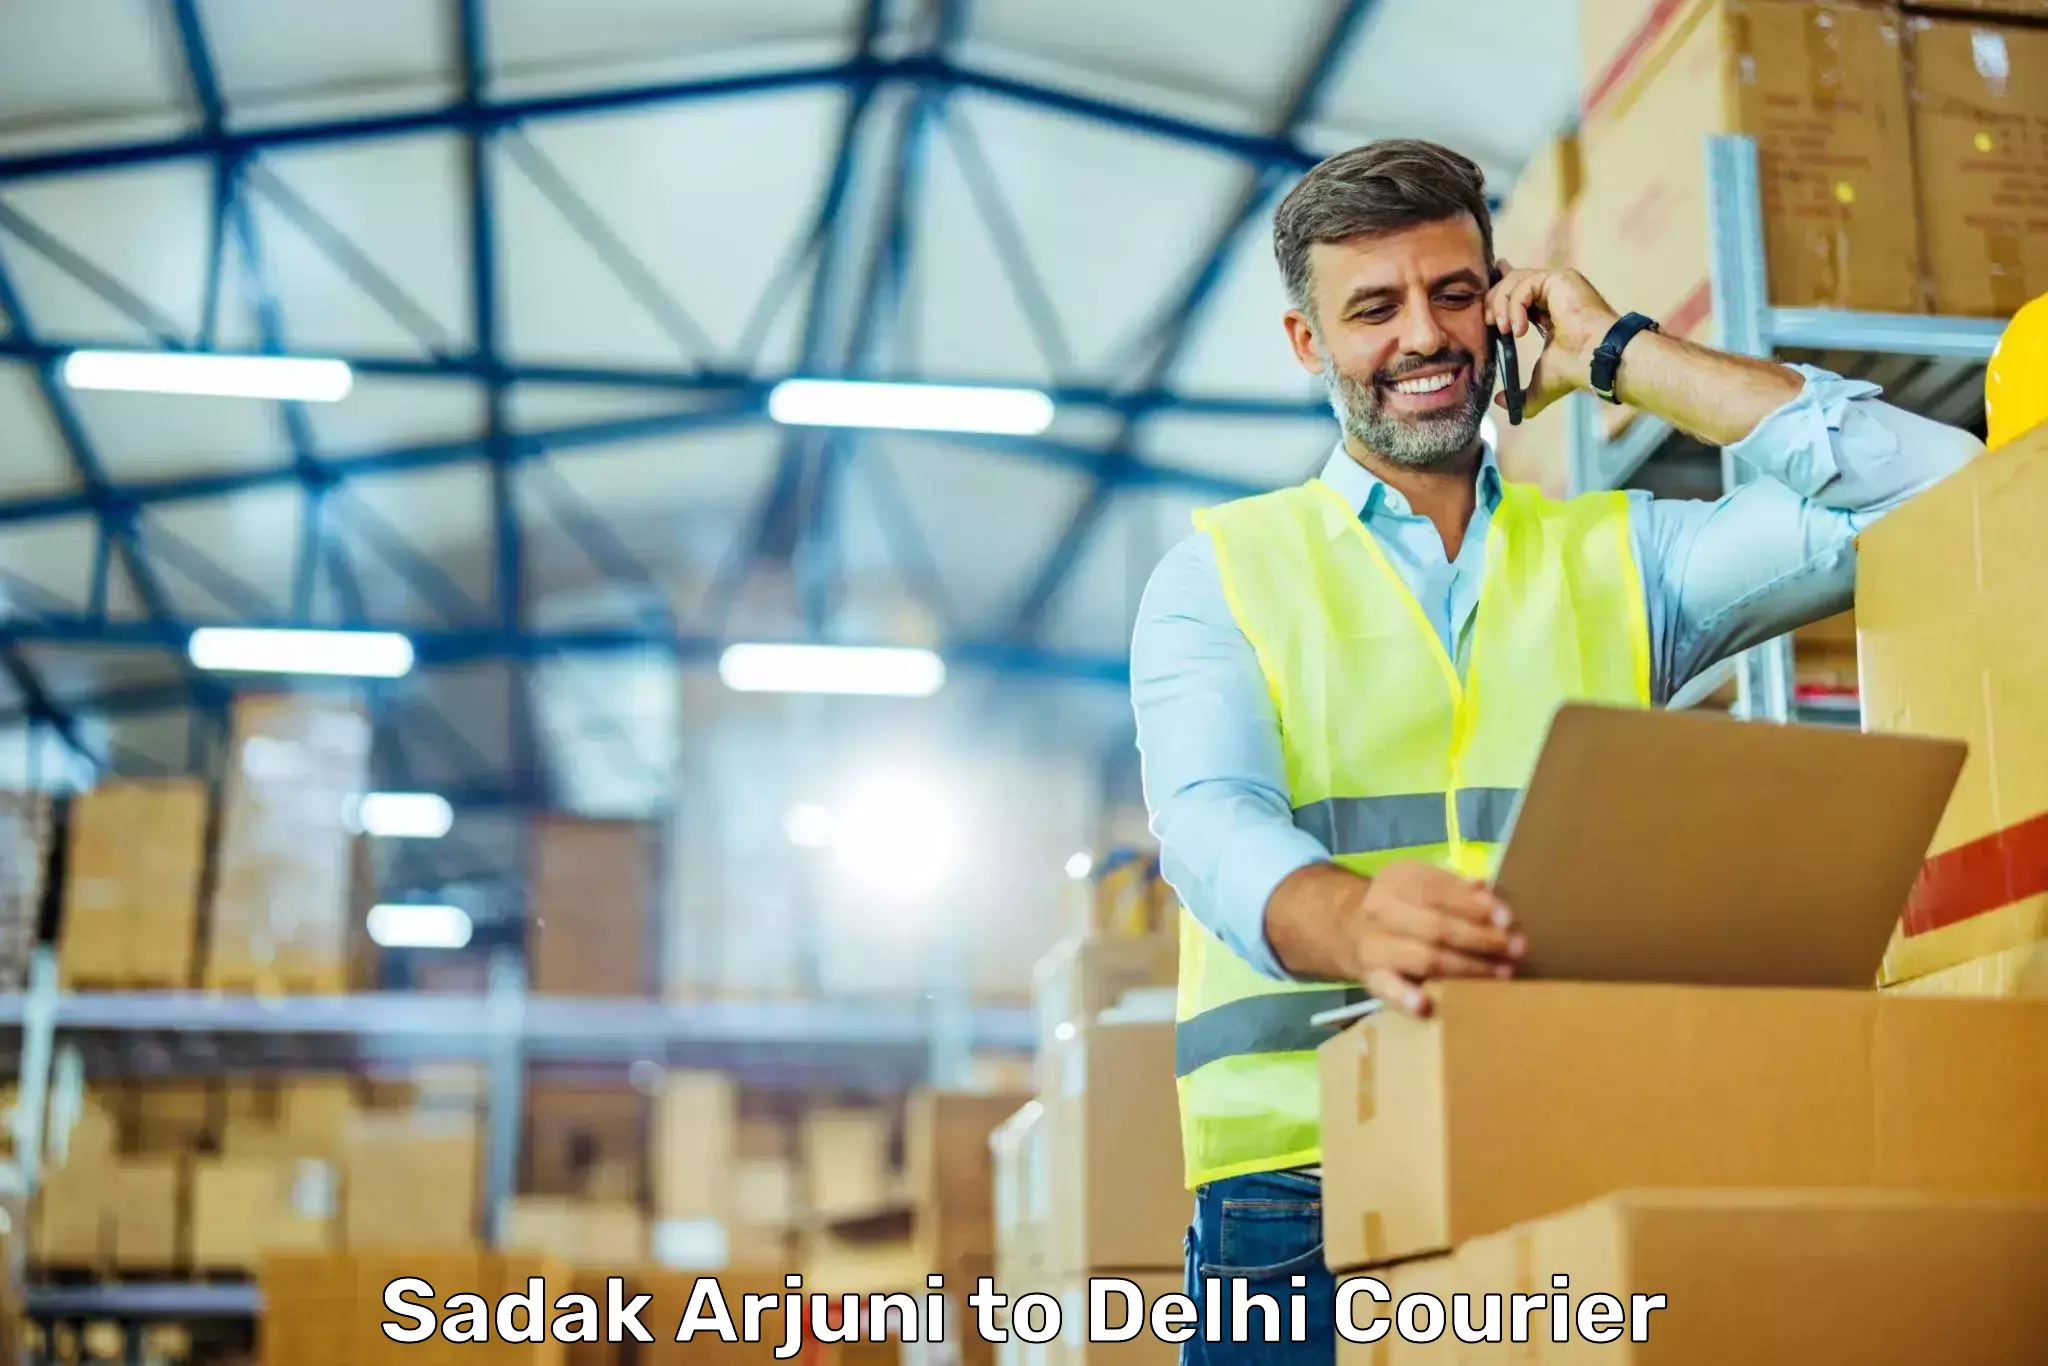 On-call courier service Sadak Arjuni to Delhi